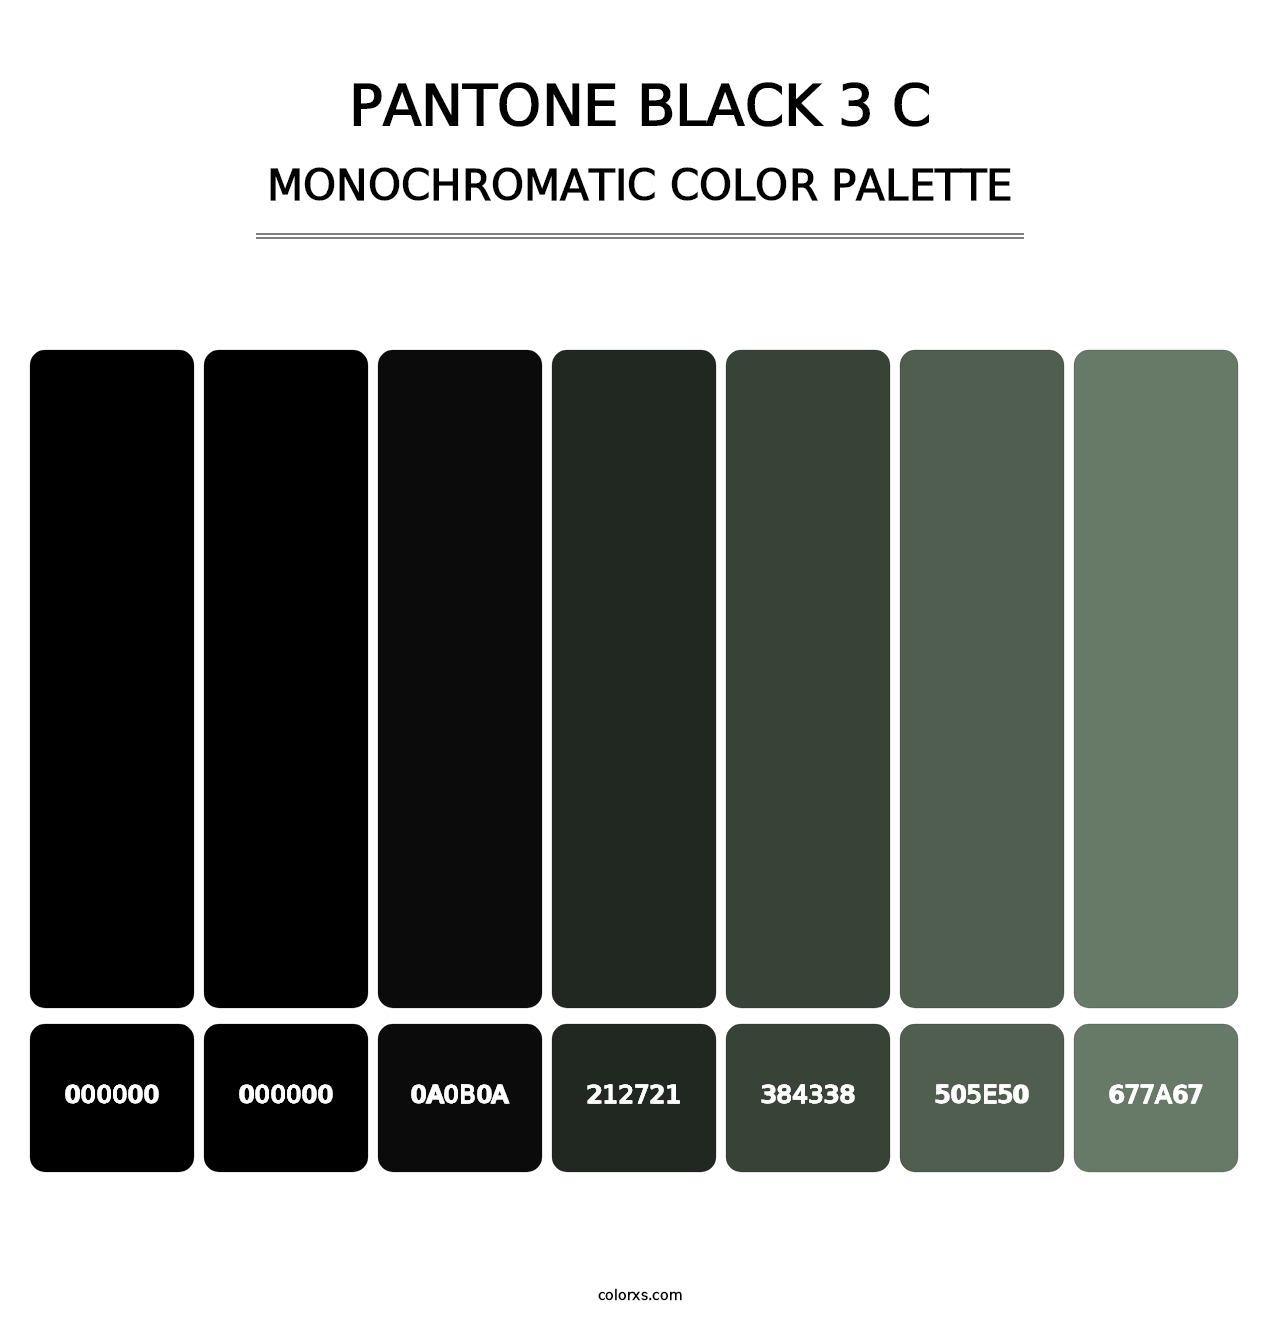 PANTONE Black 3 C - Monochromatic Color Palette